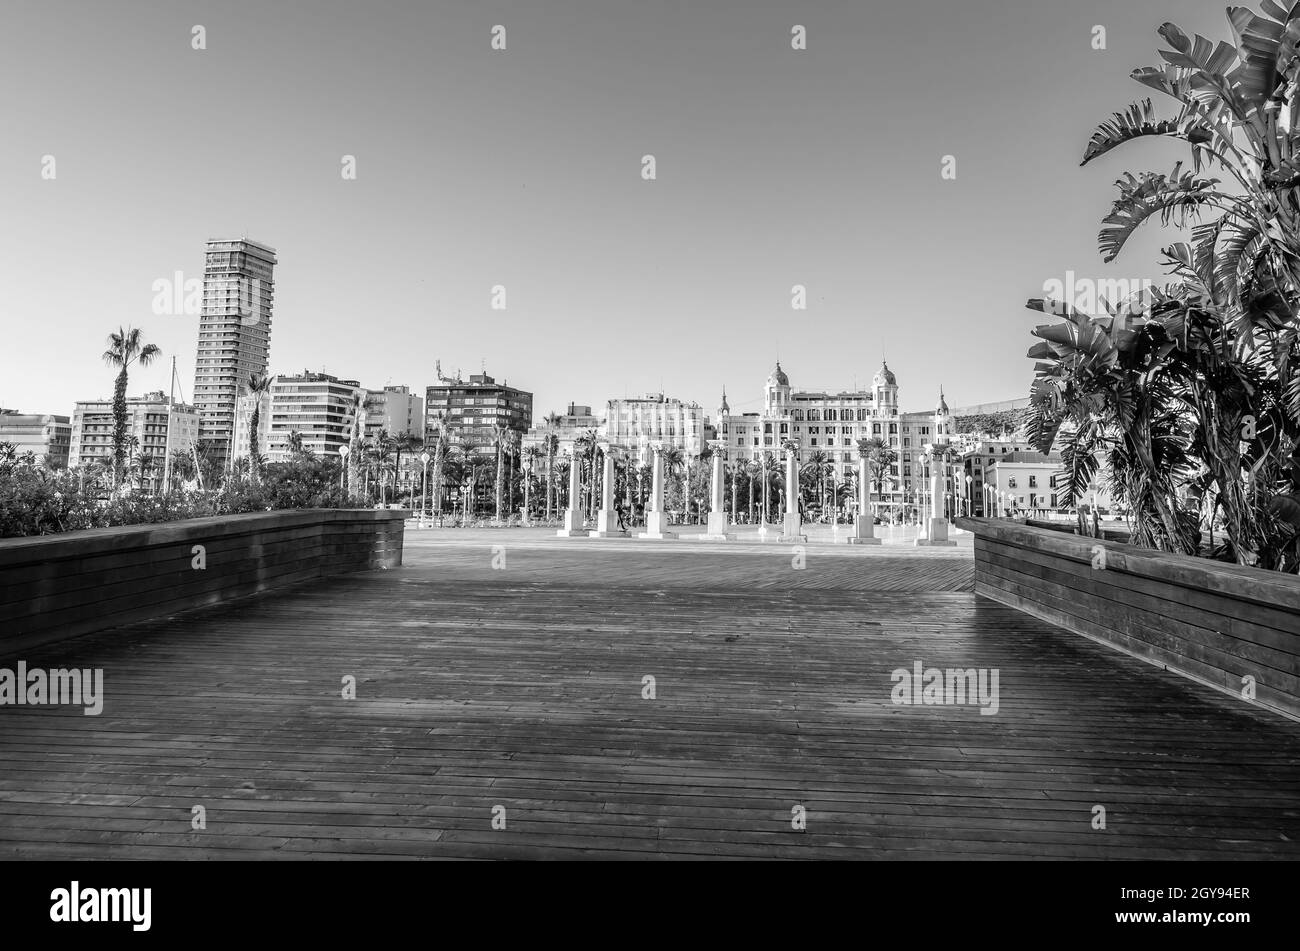 Urbane Landschaft, Blick auf die Mittelmeerstadt Alicante, Spanien; Schwarz-Weiß-Bild Stockfoto